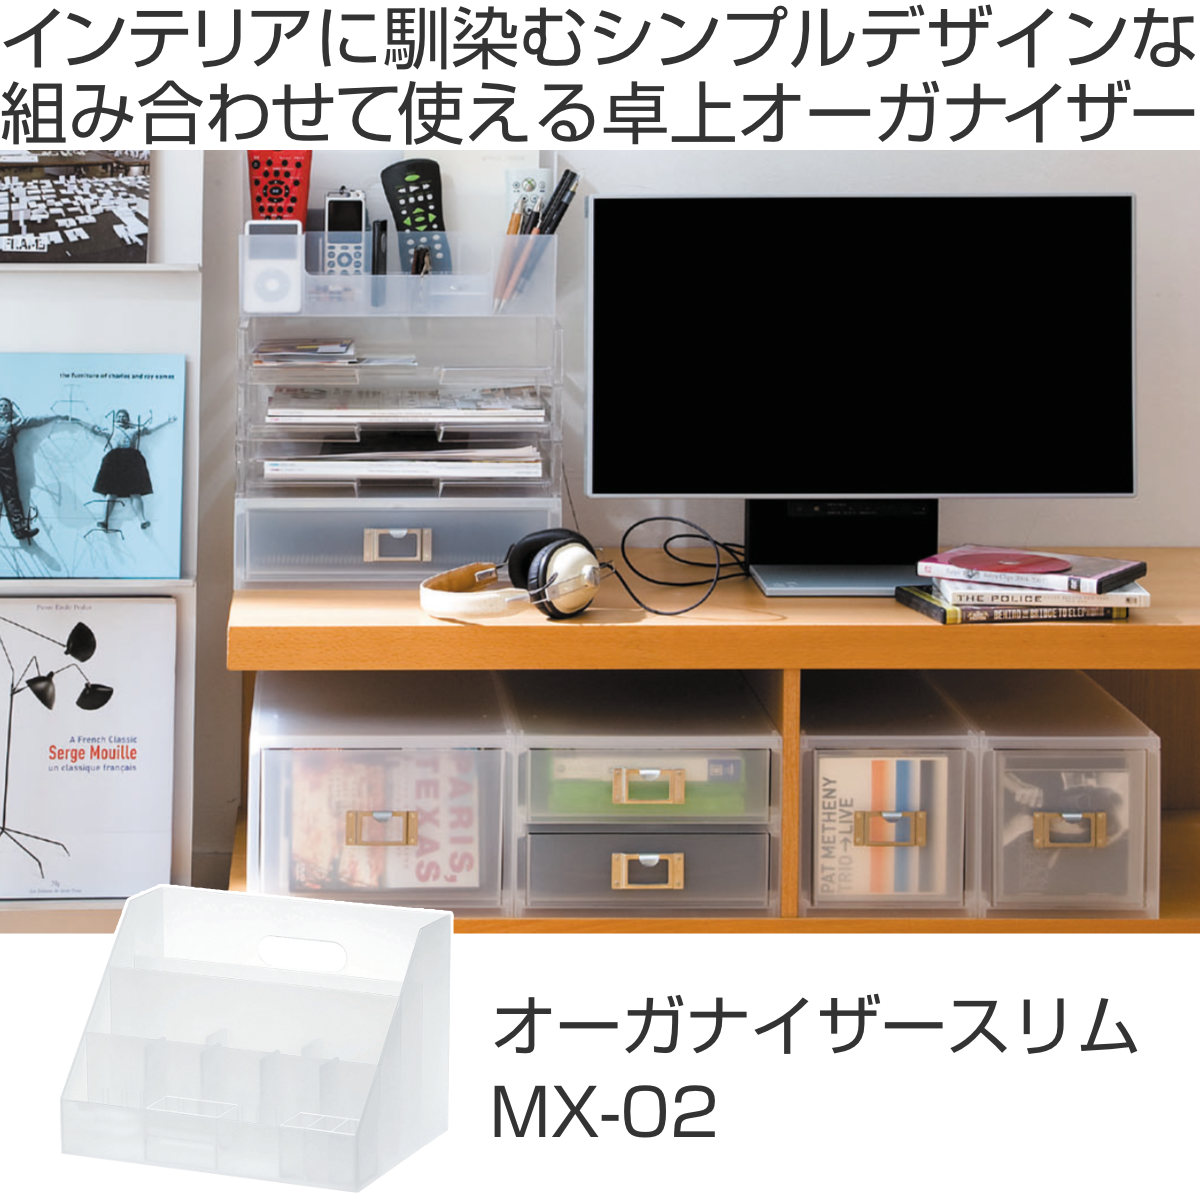 小物収納 プラスチック 卓上収納 MX-02 A4 サイズ 収納ボックス 日本製 